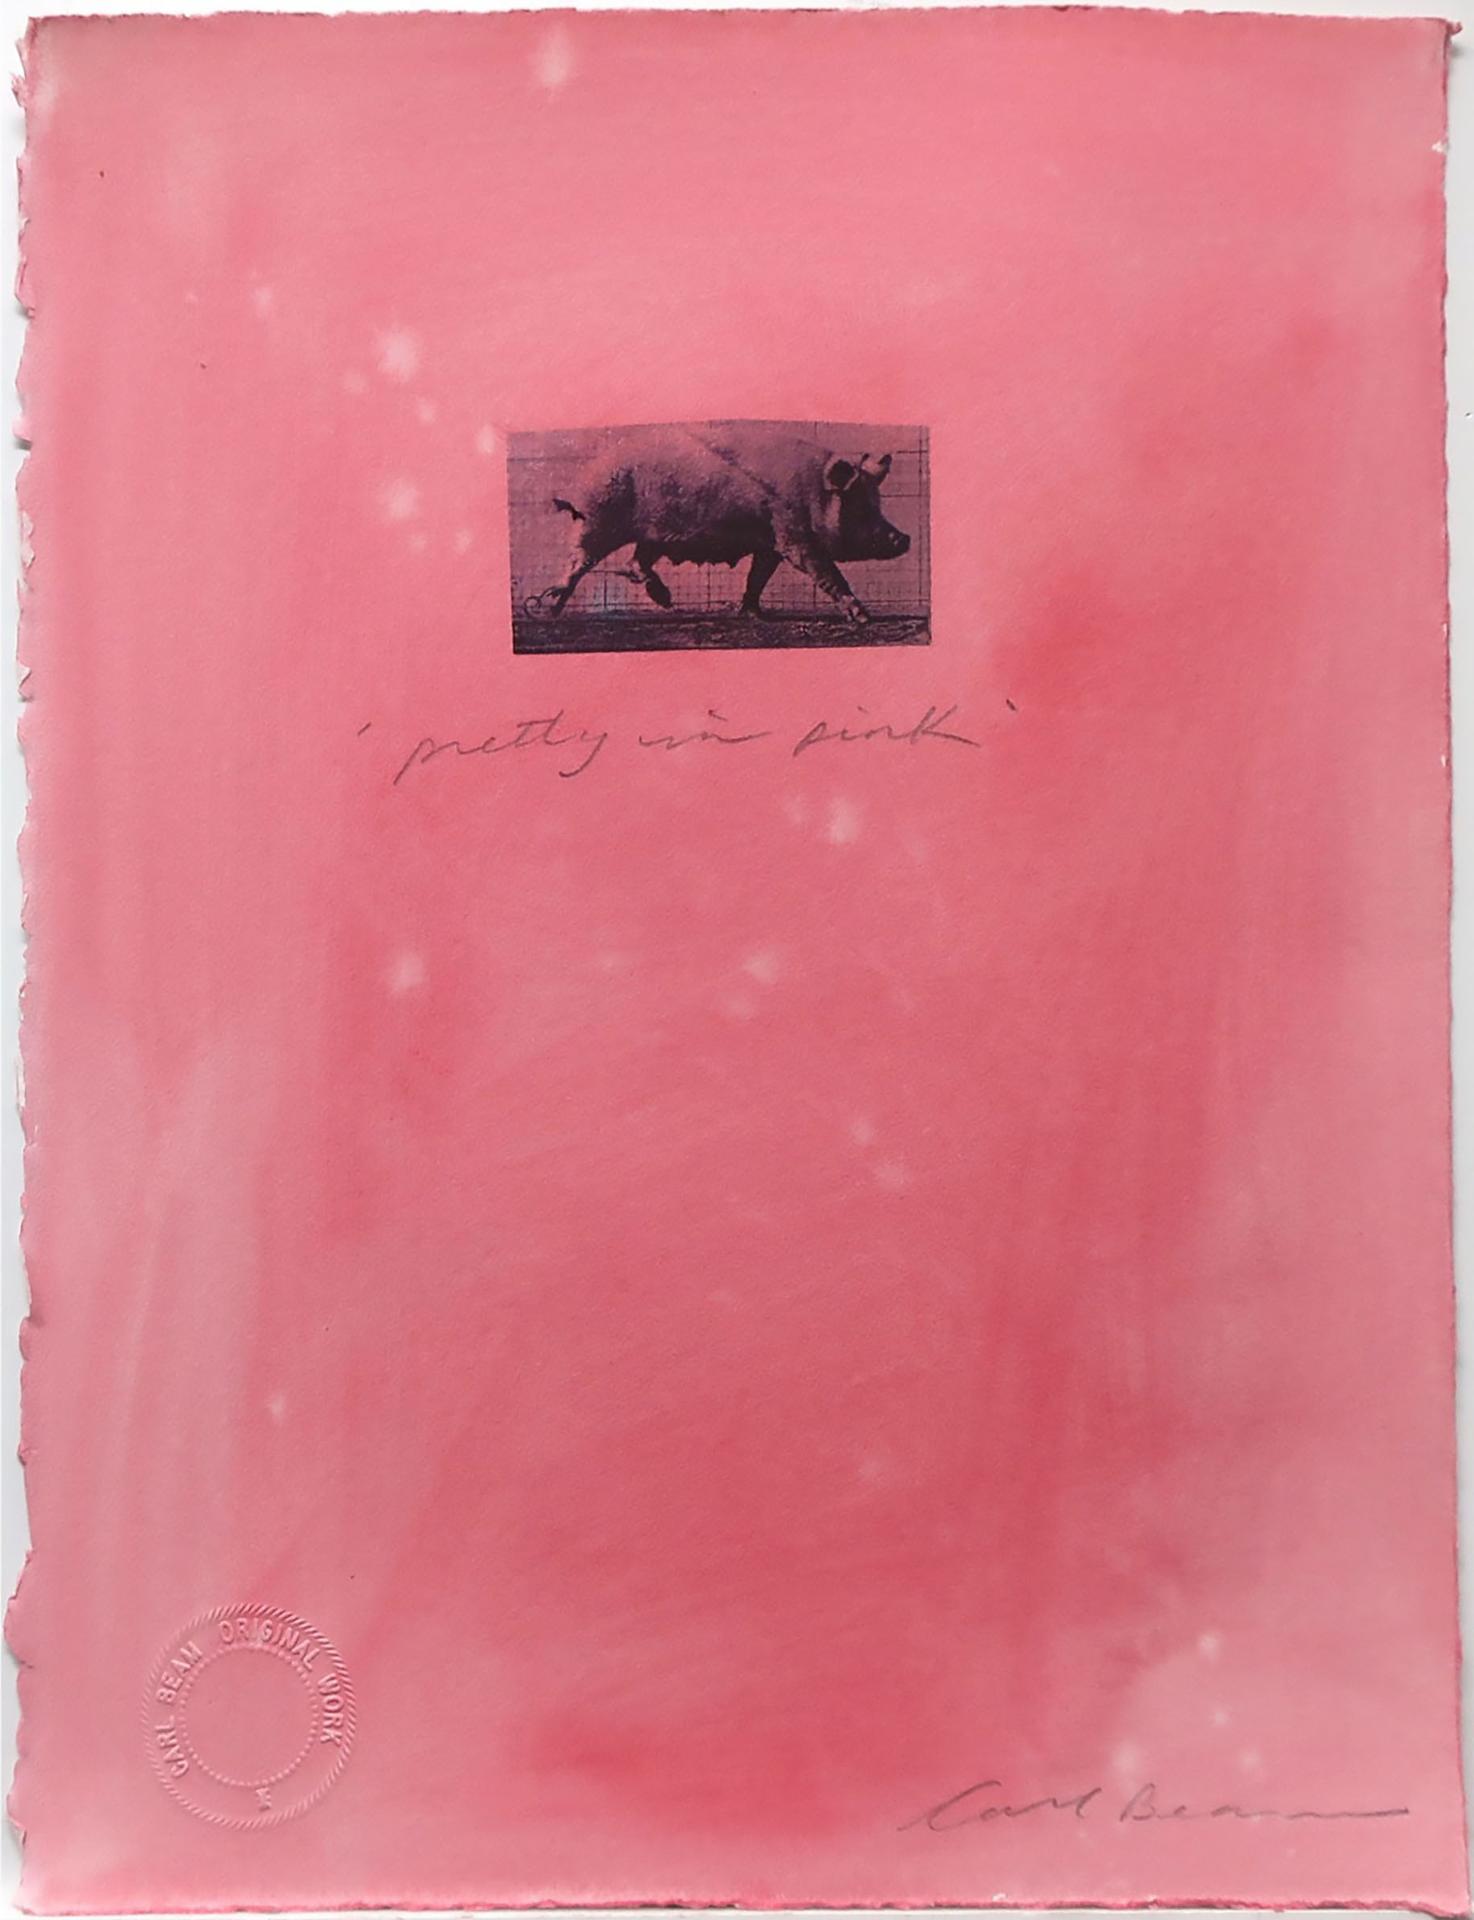 Carl Beam (1943-2005) - Pretty In Pink